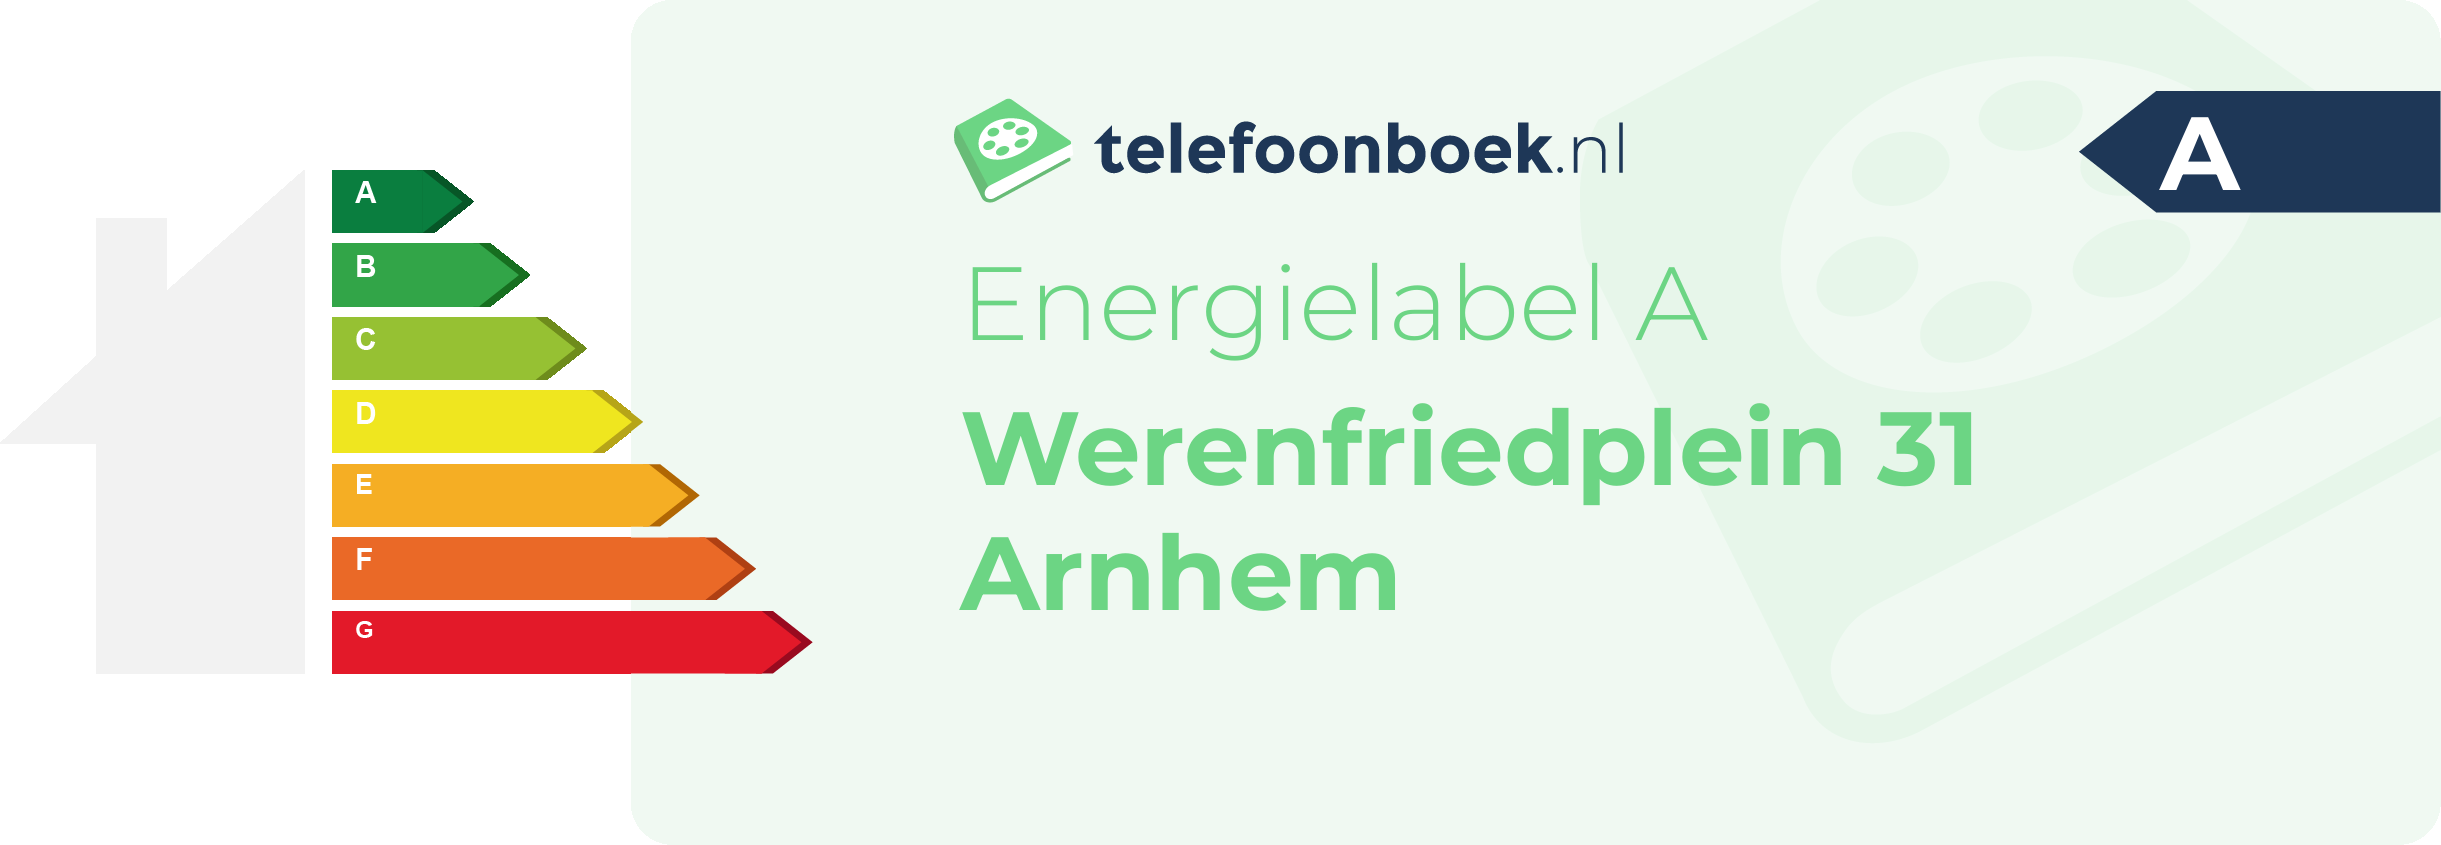 Energielabel Werenfriedplein 31 Arnhem